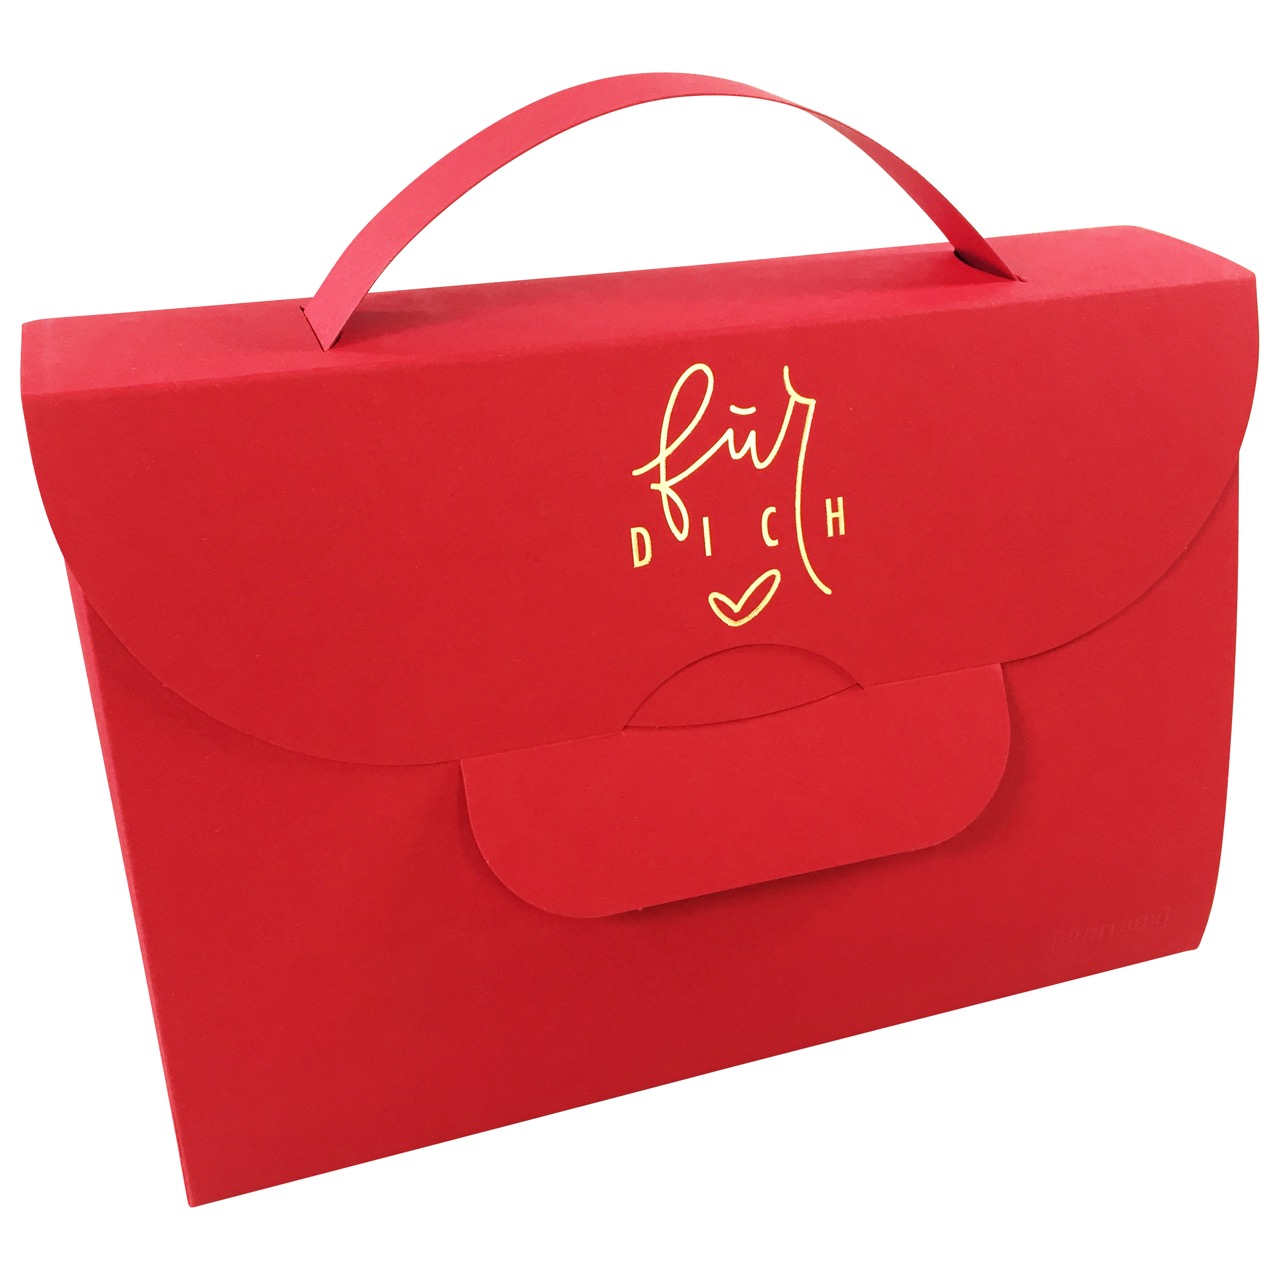 Handbag XL Für Dich in Rubin